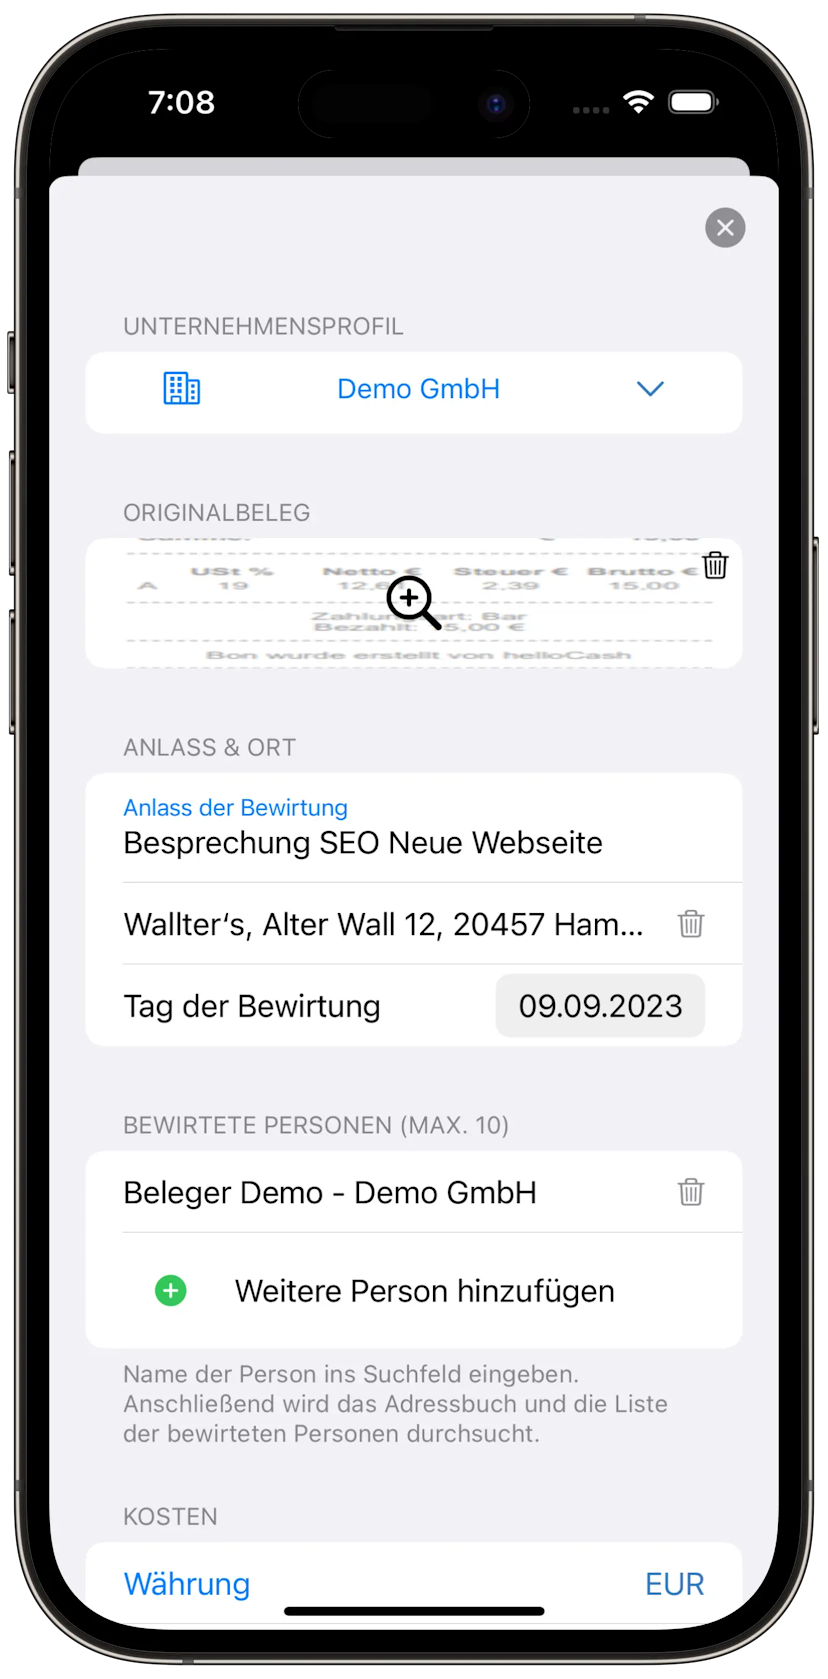 iPhone with Beleger App